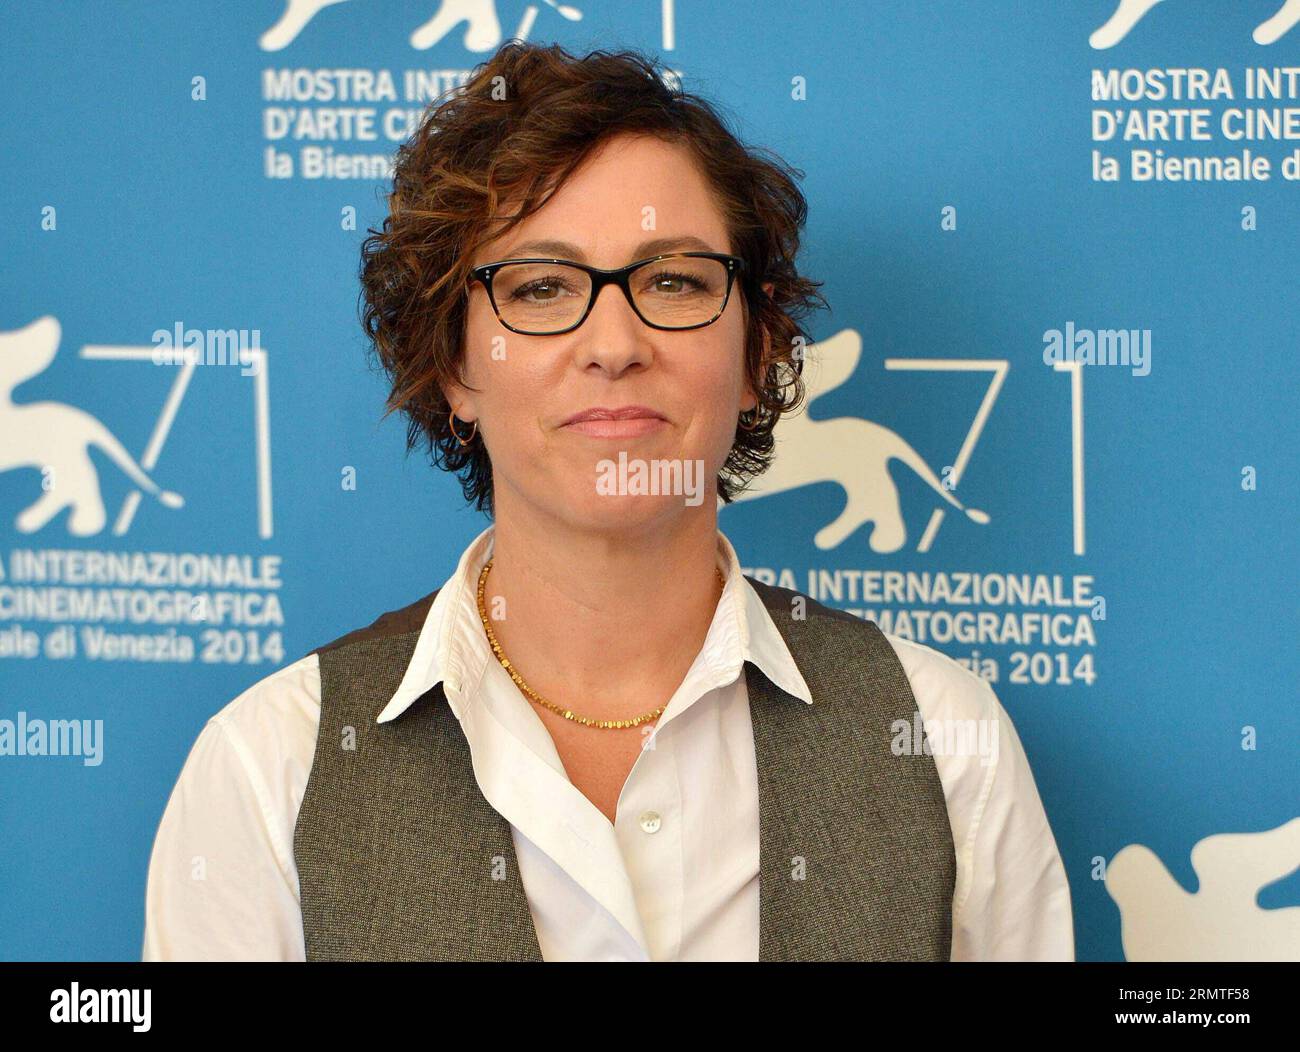 (140901) -- VENEDIG, 1. Sept. 2014 -- Regisseurin Lisa Cholodenko posiert während des Fotoaufrufs für Olive Kitteridge, der am 1. Sept. 2014 während des 71. Filmfestivals in Venedig im italienischen Lido ausgewählt wurde. ) (dzl) ITALIEN-VENEDIG-FILM FESTIVAL-FOTO CALL-OLIVE KITTERIDGE LiuxLihang PUBLICATIONxNOTxINxCHN Venedig September 1 2014 Regisseurin Lisa Cholodenko posiert während des Photo Call for Olive Kitteridge, die während des 71. Filmfestivals in Venedig Italien AM 1. September 2014 ausgewählt WIRD Kitteridge PUBLICATIONxNOTx Stockfoto